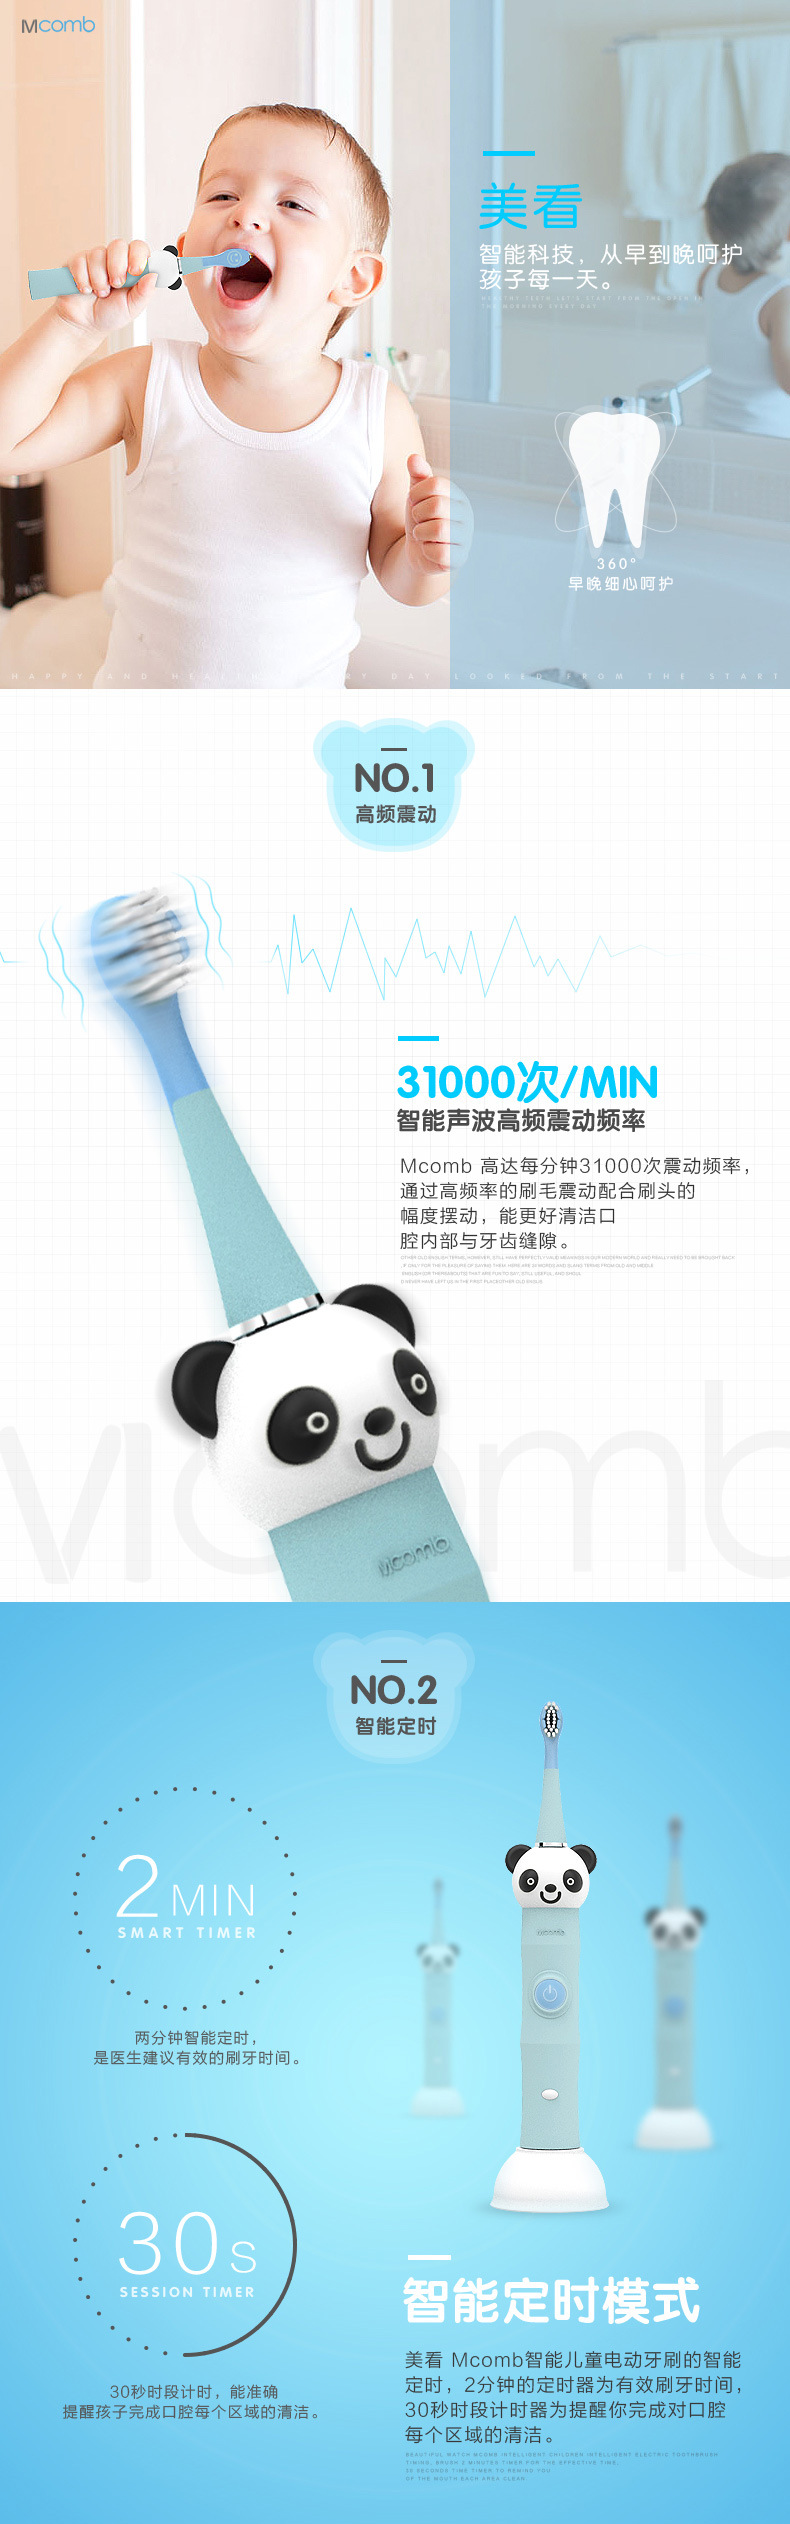 香港Mcomb儿童电动牙刷 软毛包胶卡通 声波震动 智能定时 OEM贴牌示例图2